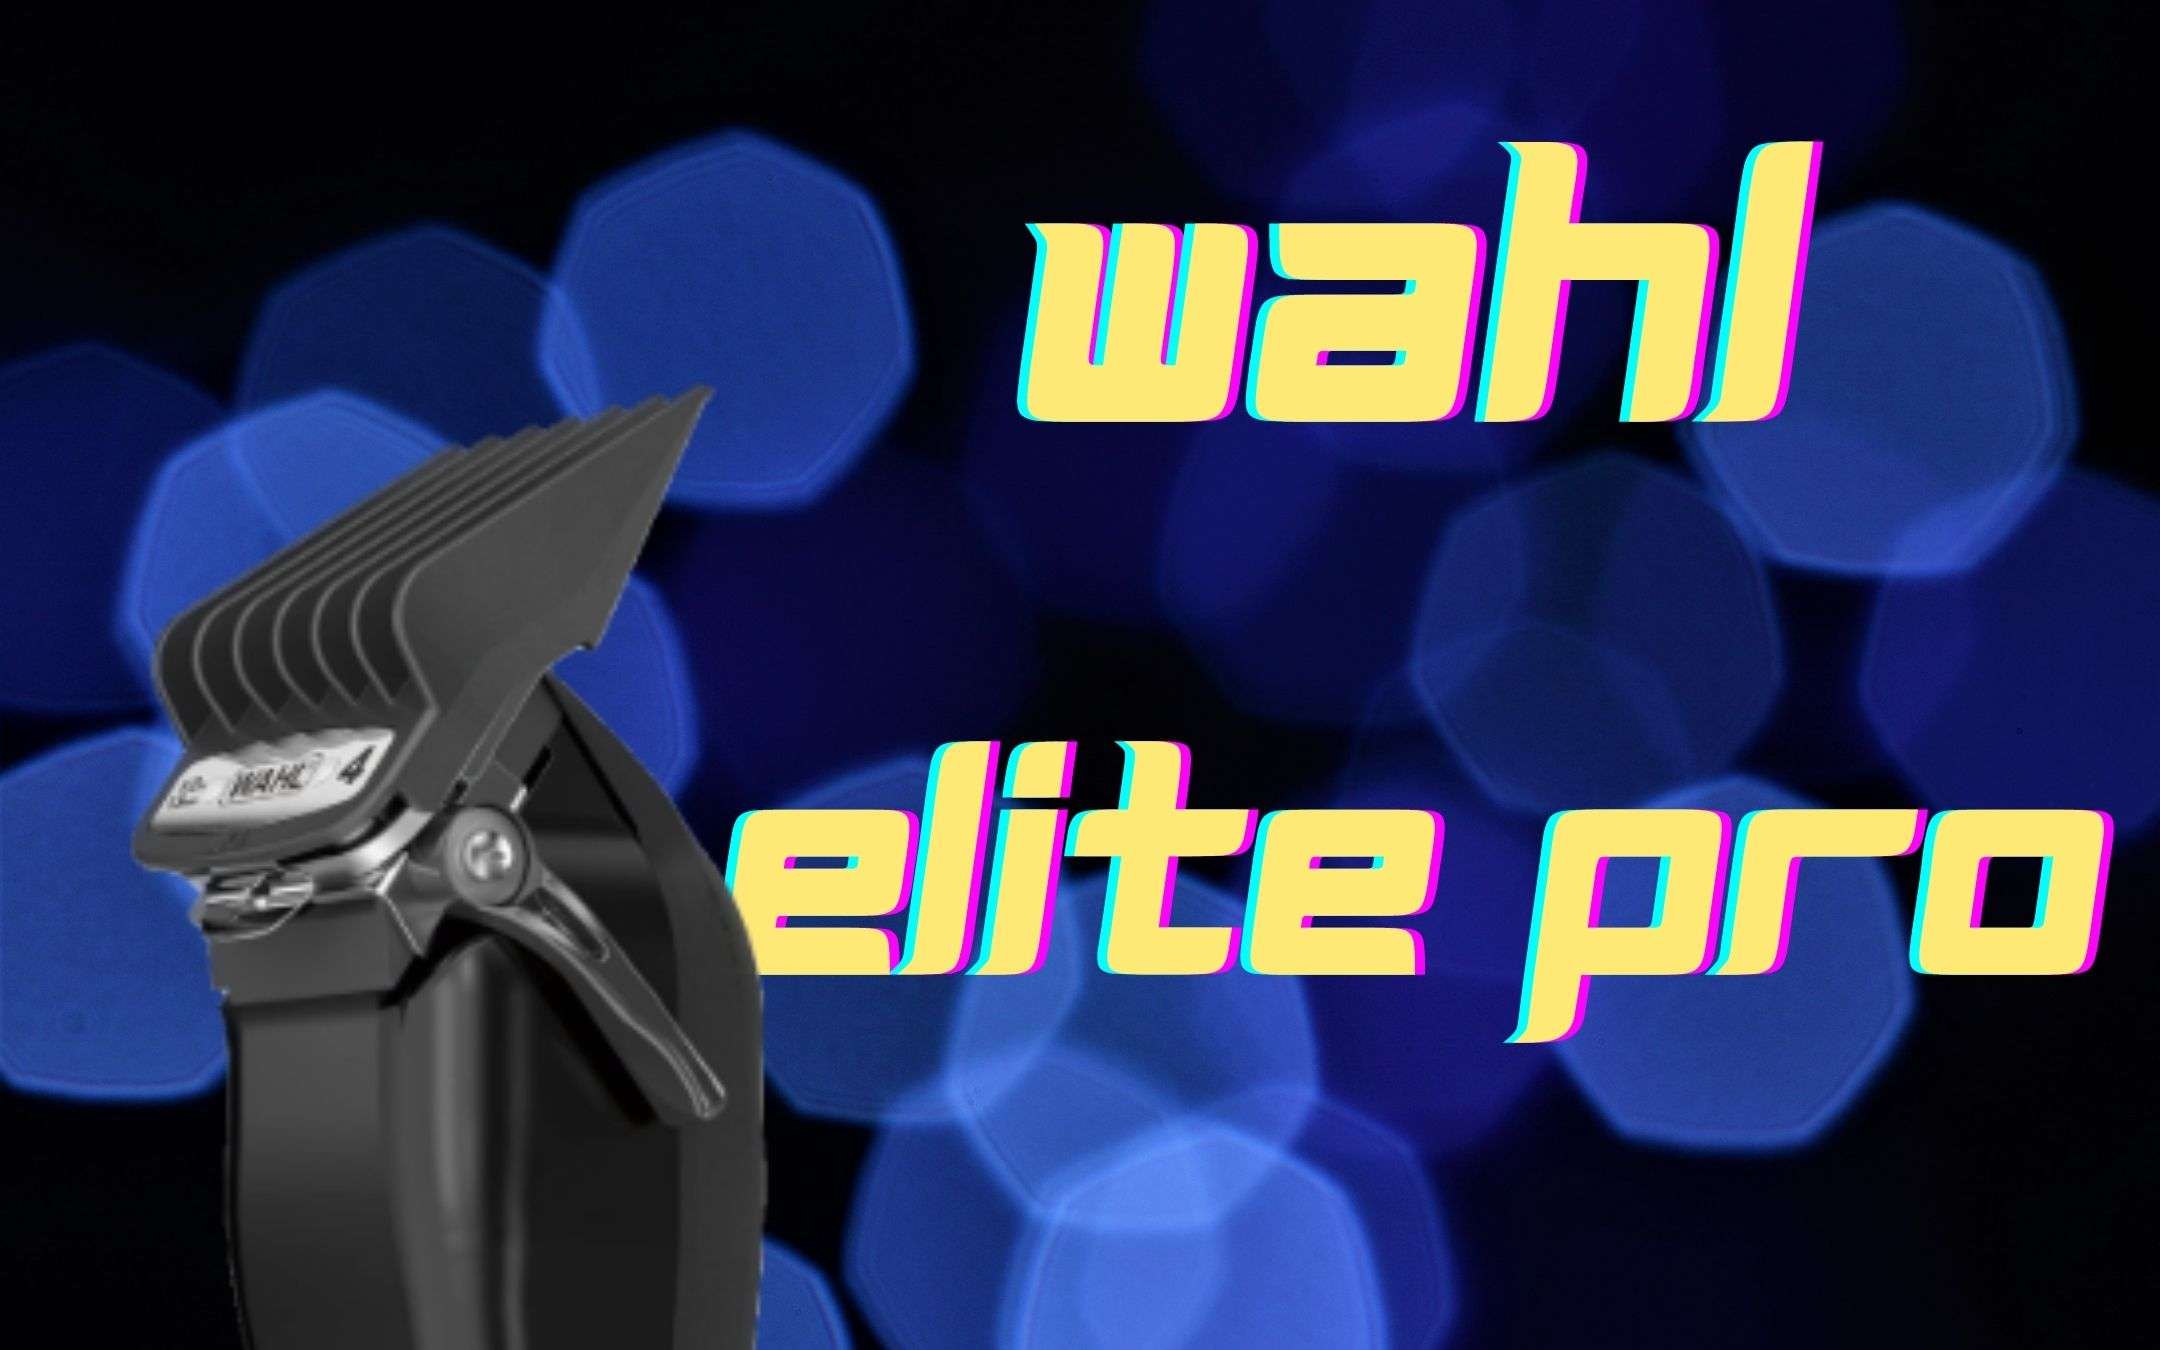 Wahl Elite Pro: il miglior tagliacapelli in sconto